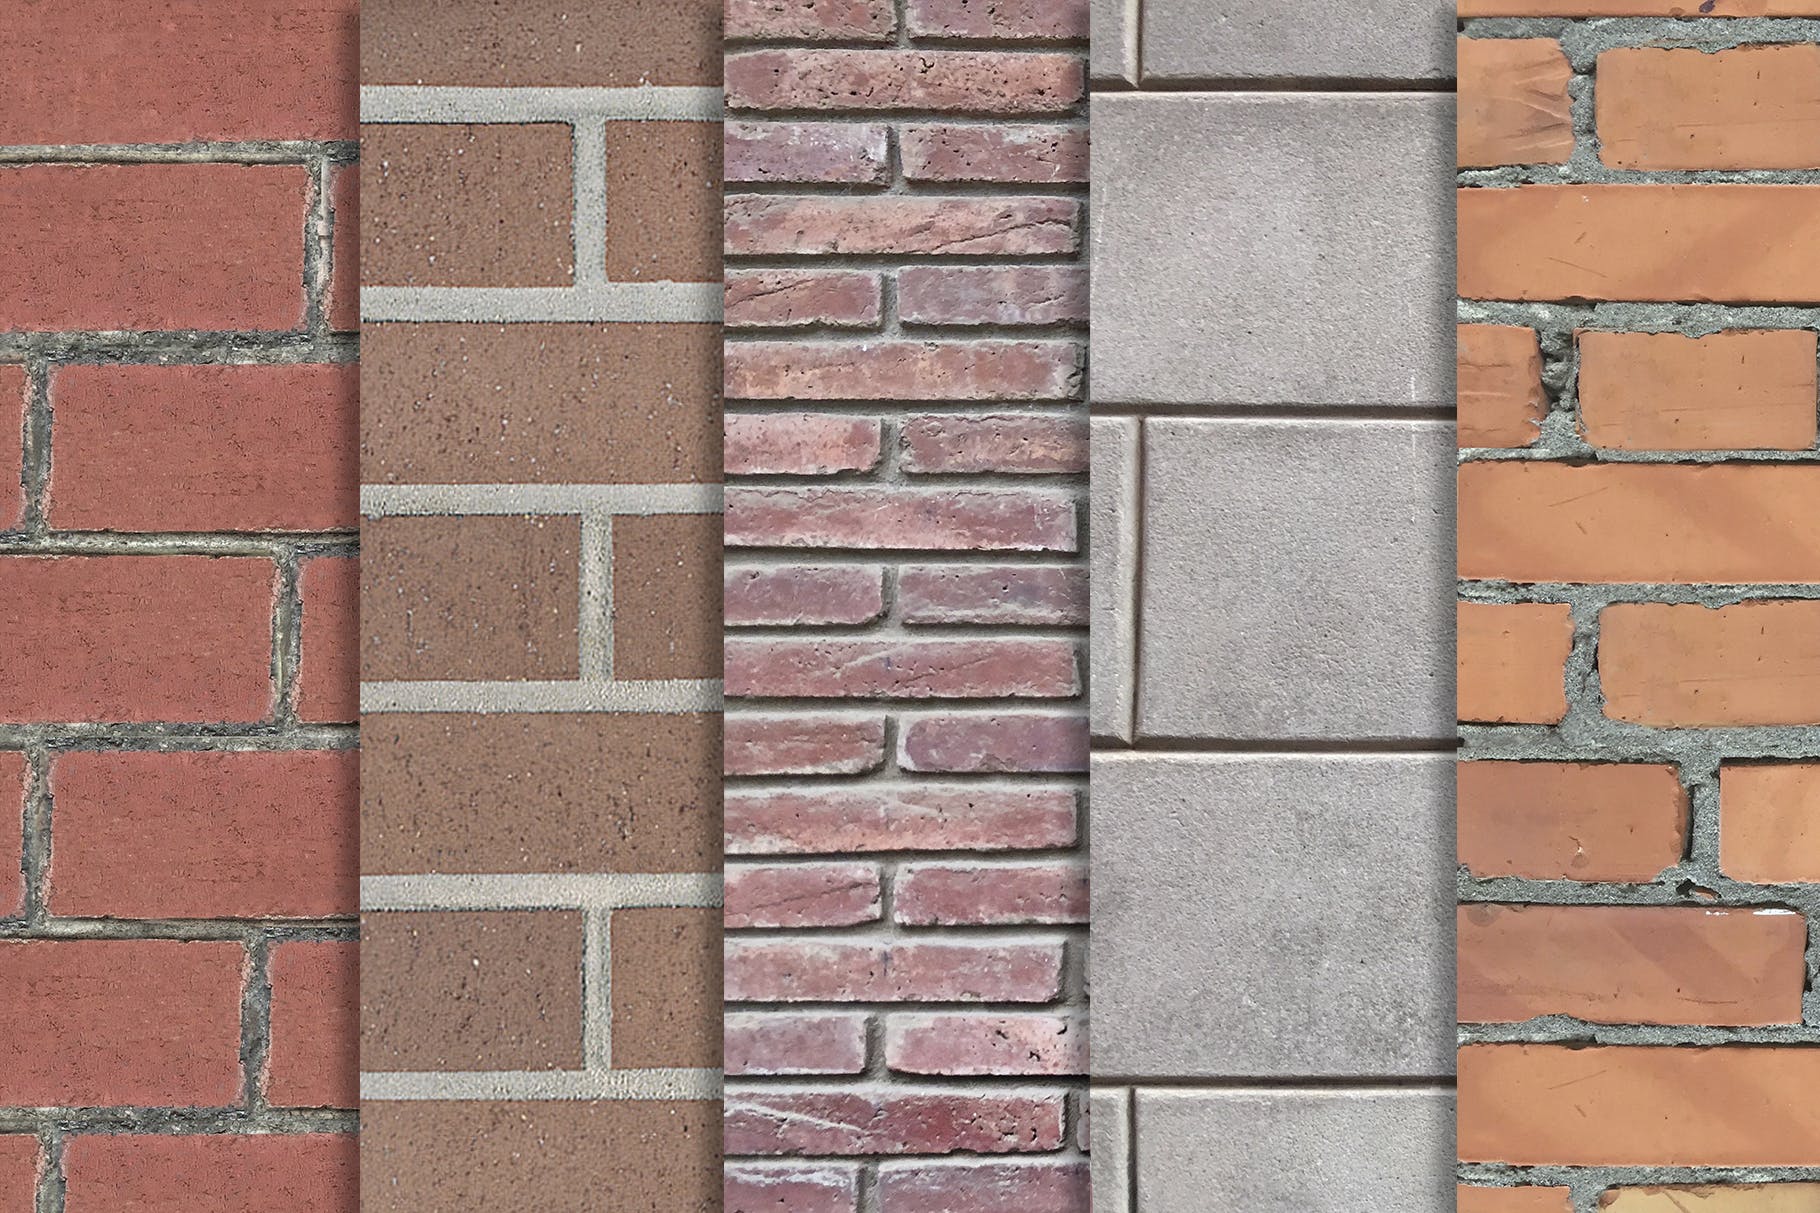 10张砖墙纹理高清大洋岛精选背景素材v3 Brick Wall Textures x10 Vol 3插图1